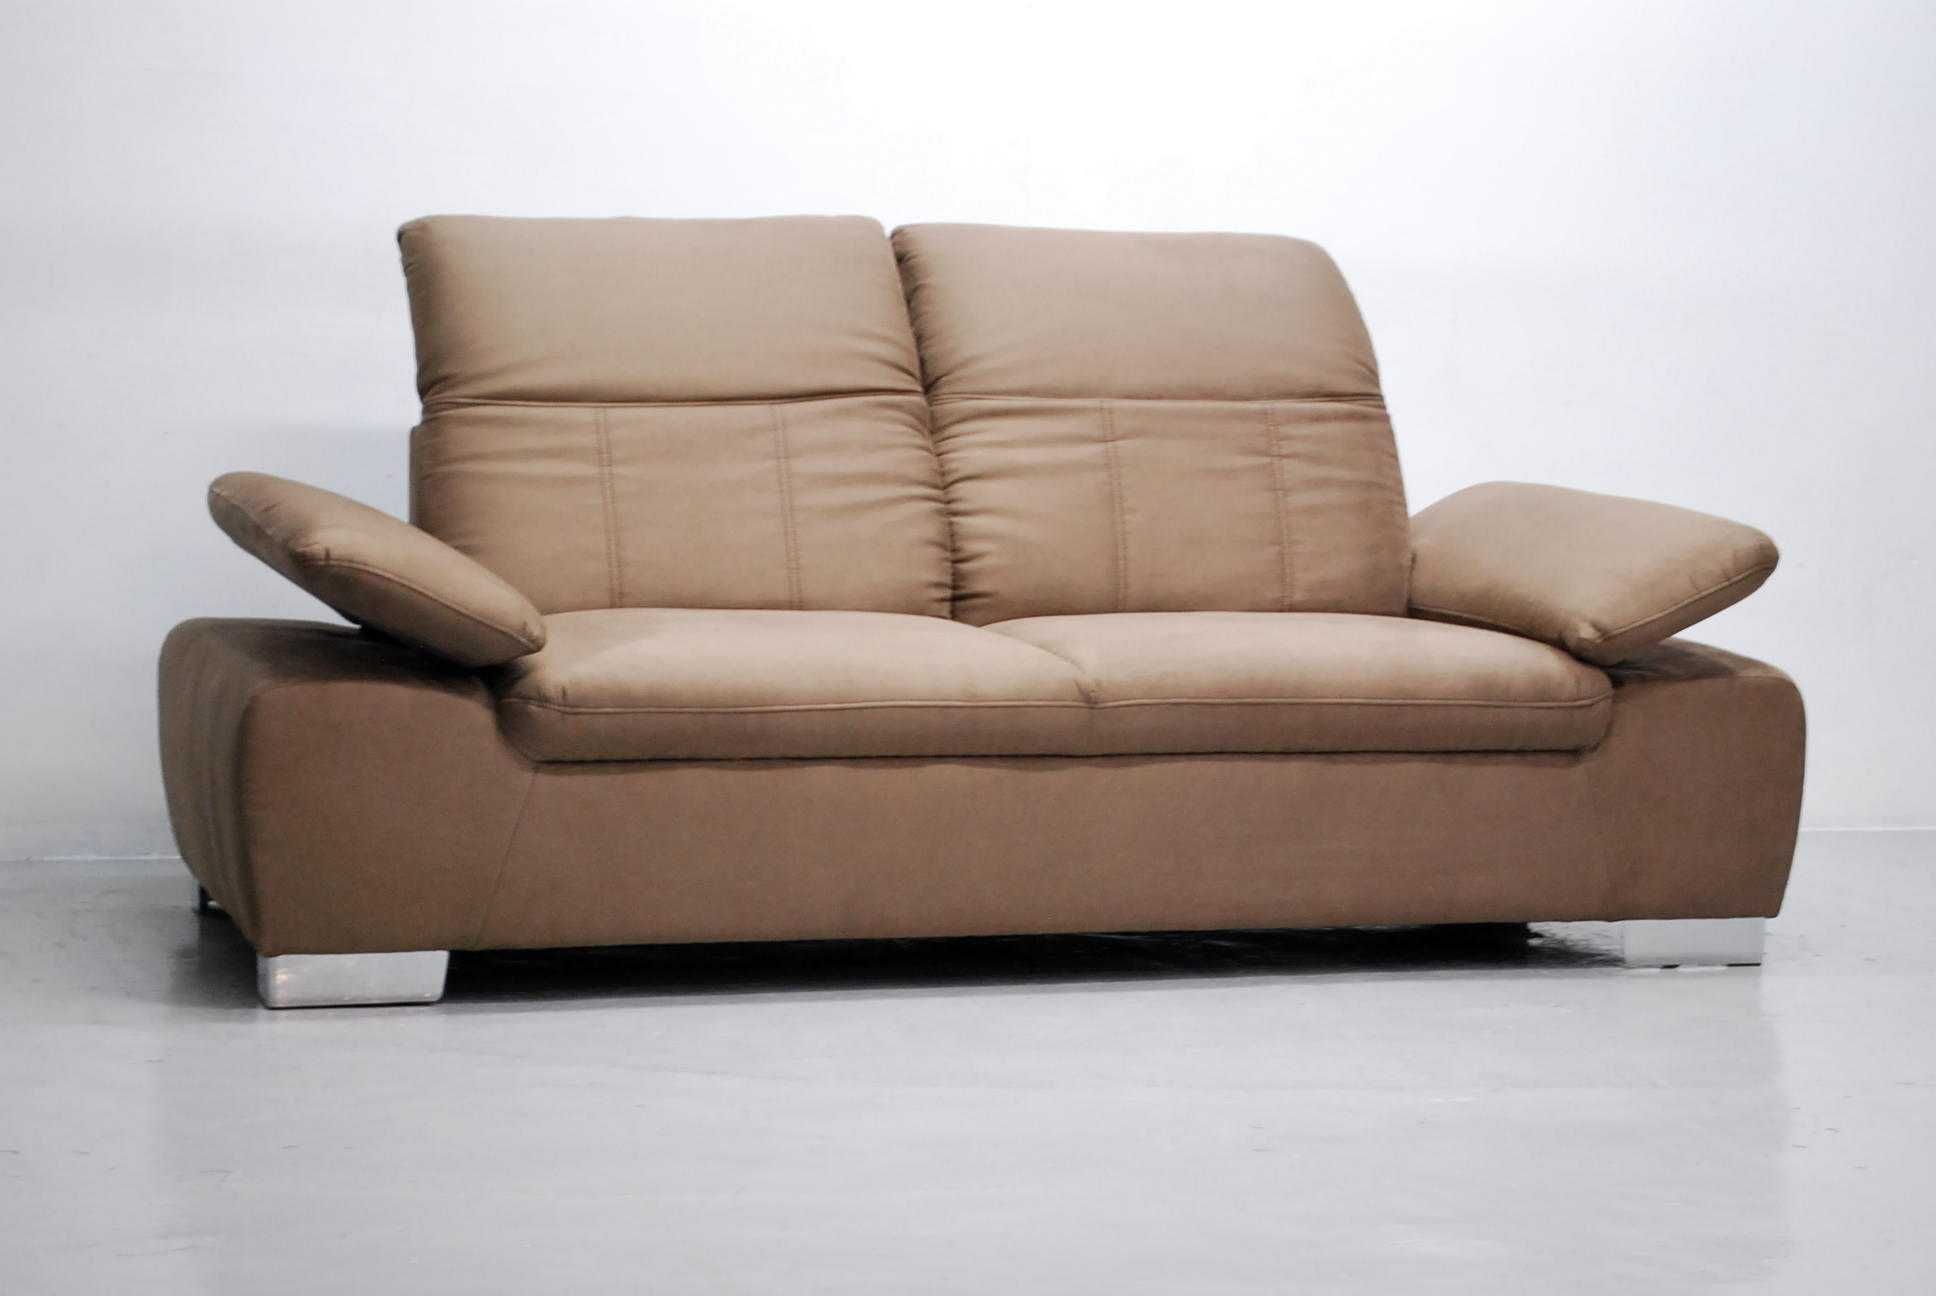 RYG nowa nowoczesna sofa 3- osobowa podnoszone oparcie i podłokietniki